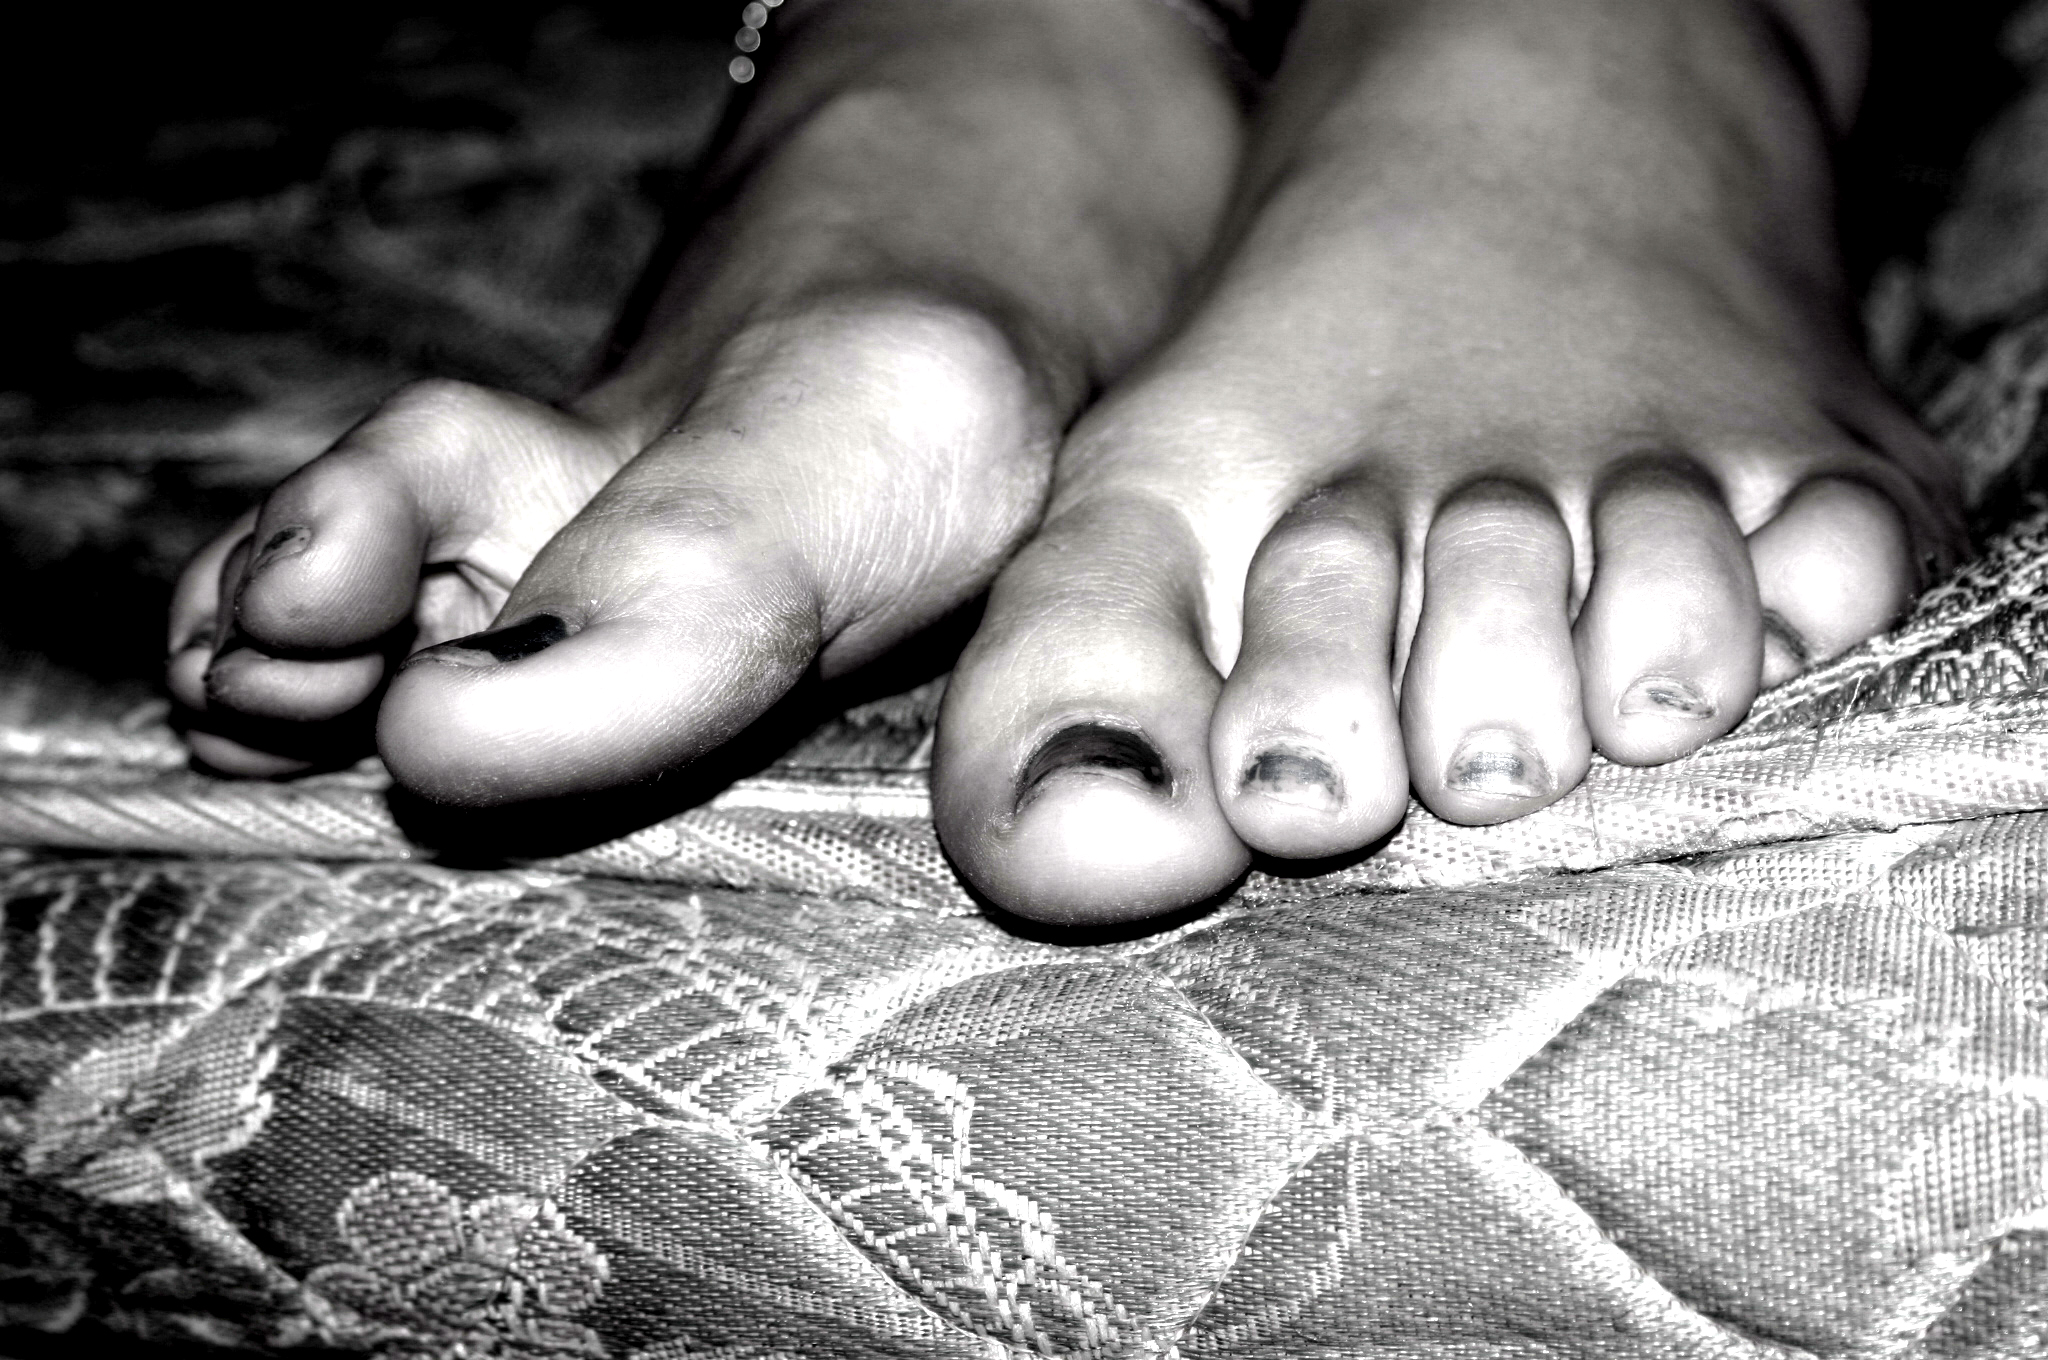 feet, toes, grayscale, monochrome - desktop wallpaper